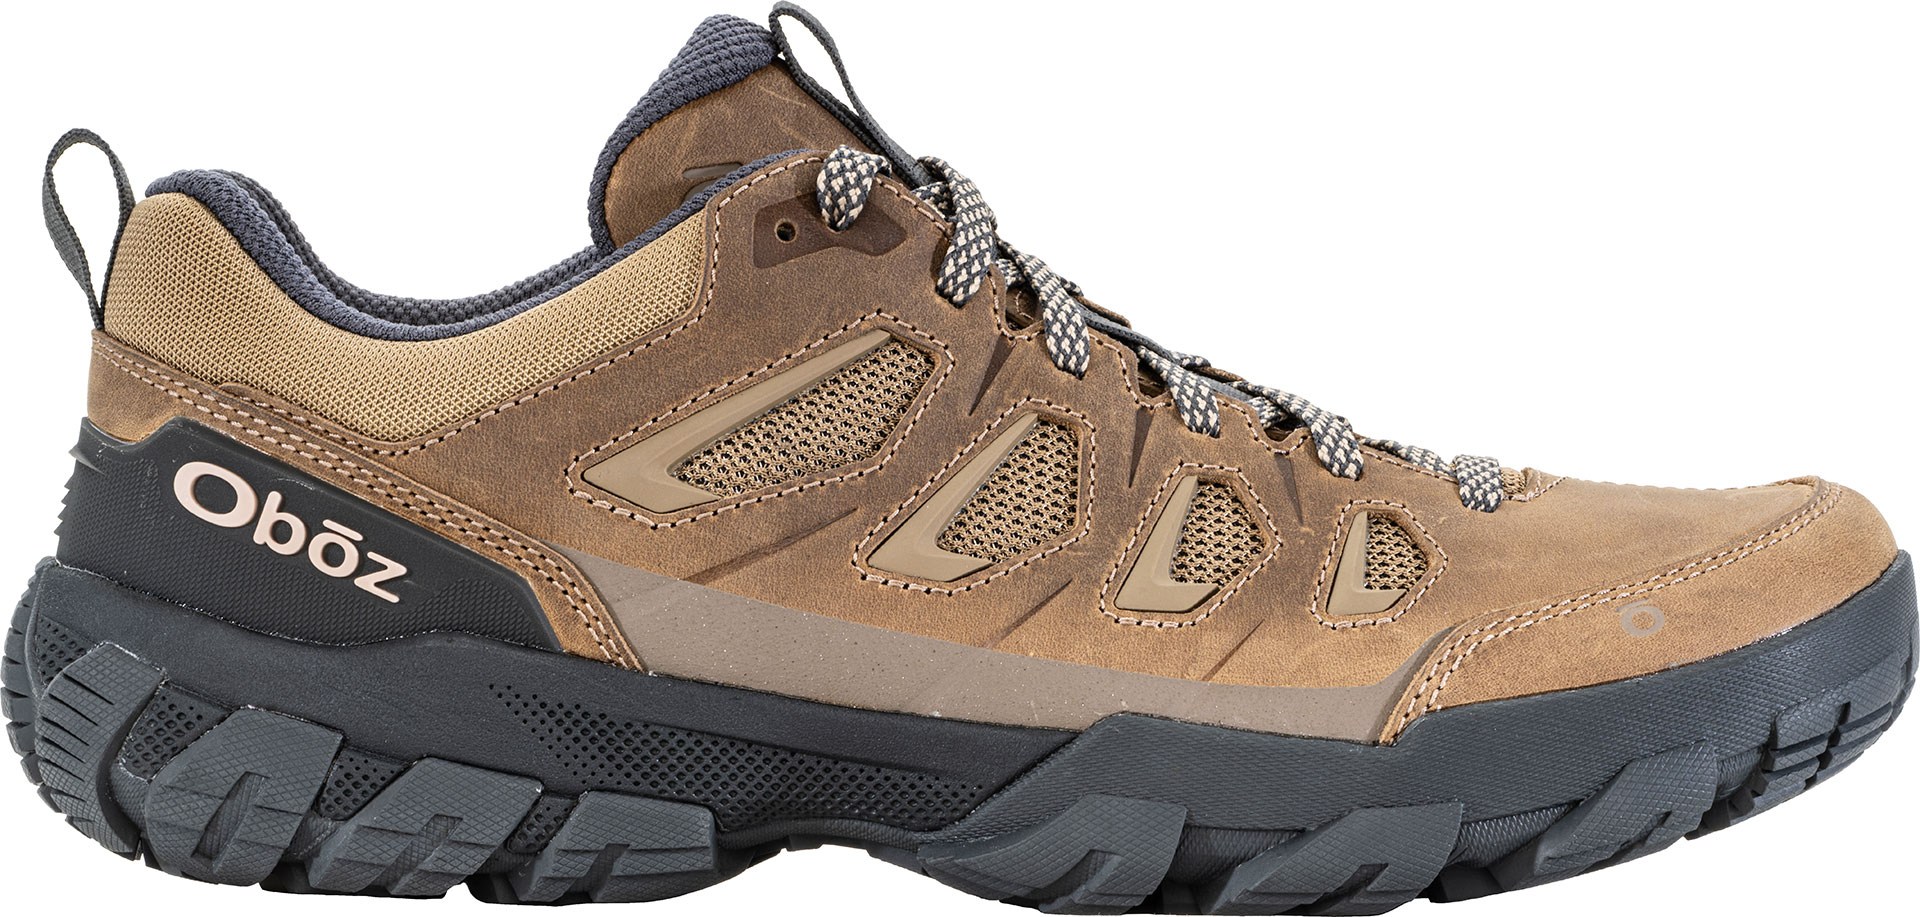 Низкие походные мужские ботинки Oboz Sawtooth X, коричневый кроссовки sawtooth x mid oboz камнепад